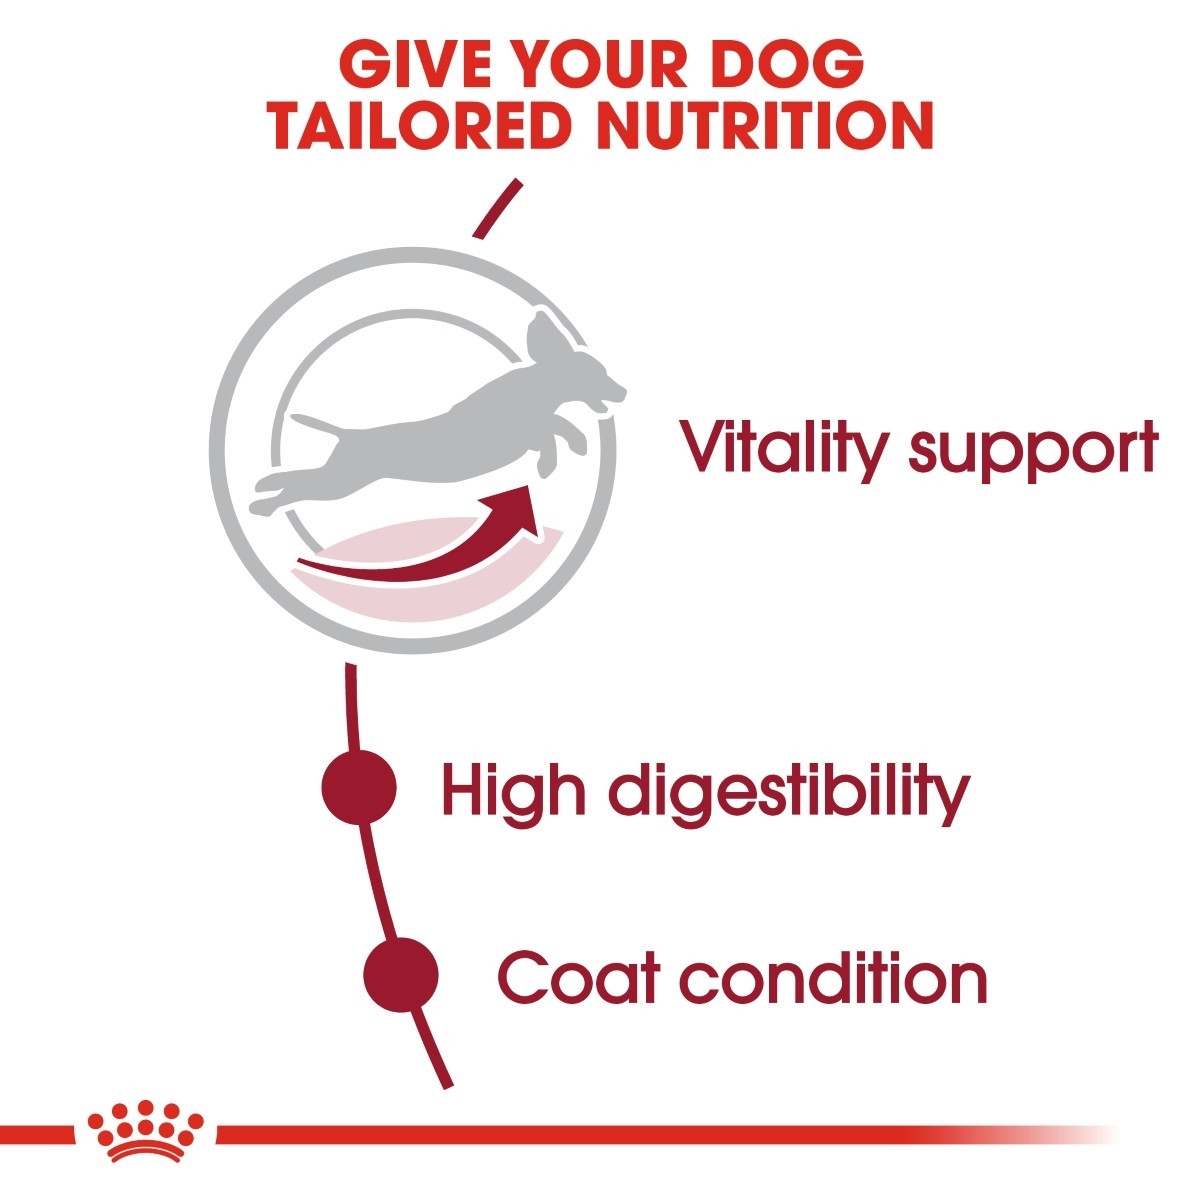 Royal Canin Medium Adult 7+ Dry Dog Food - Targa Pet Shop